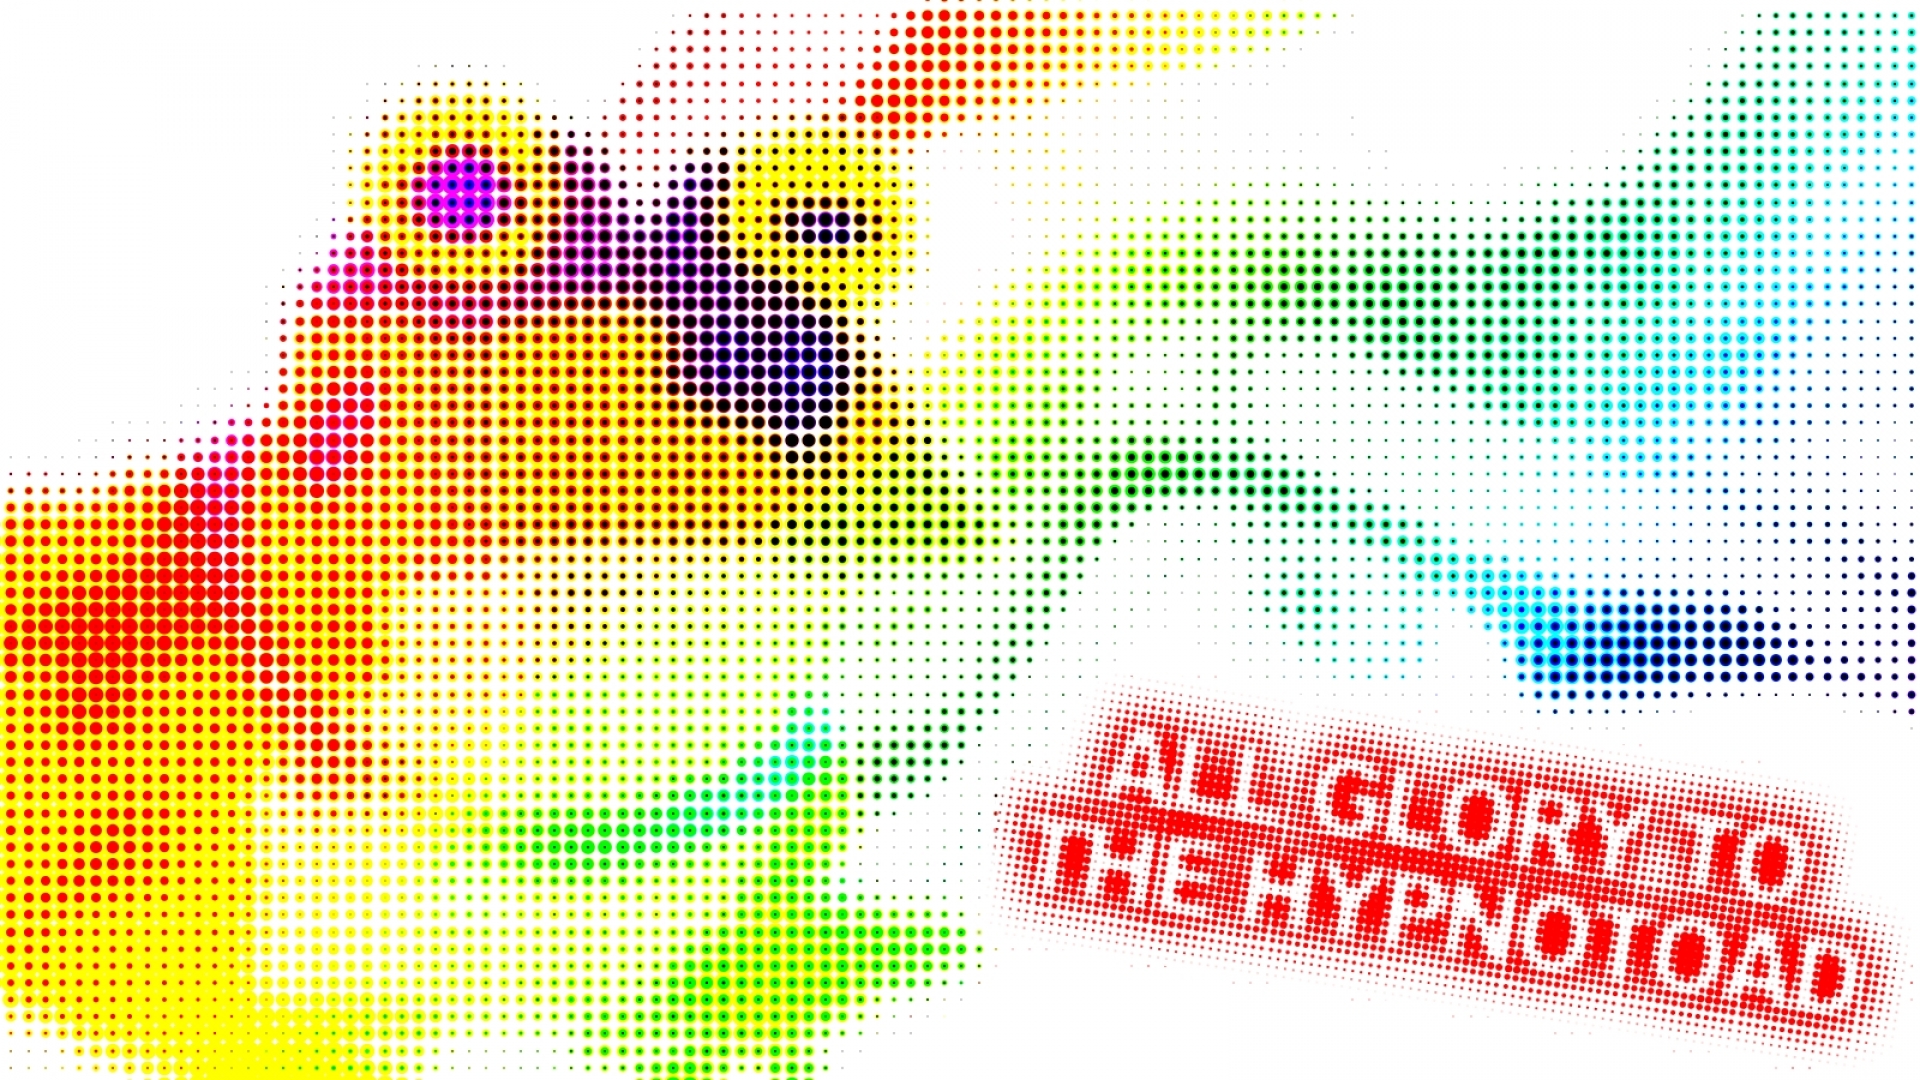  hypnotoad fan hypno 1600x900 wallpaper Art HD WallpaperHi Res Art